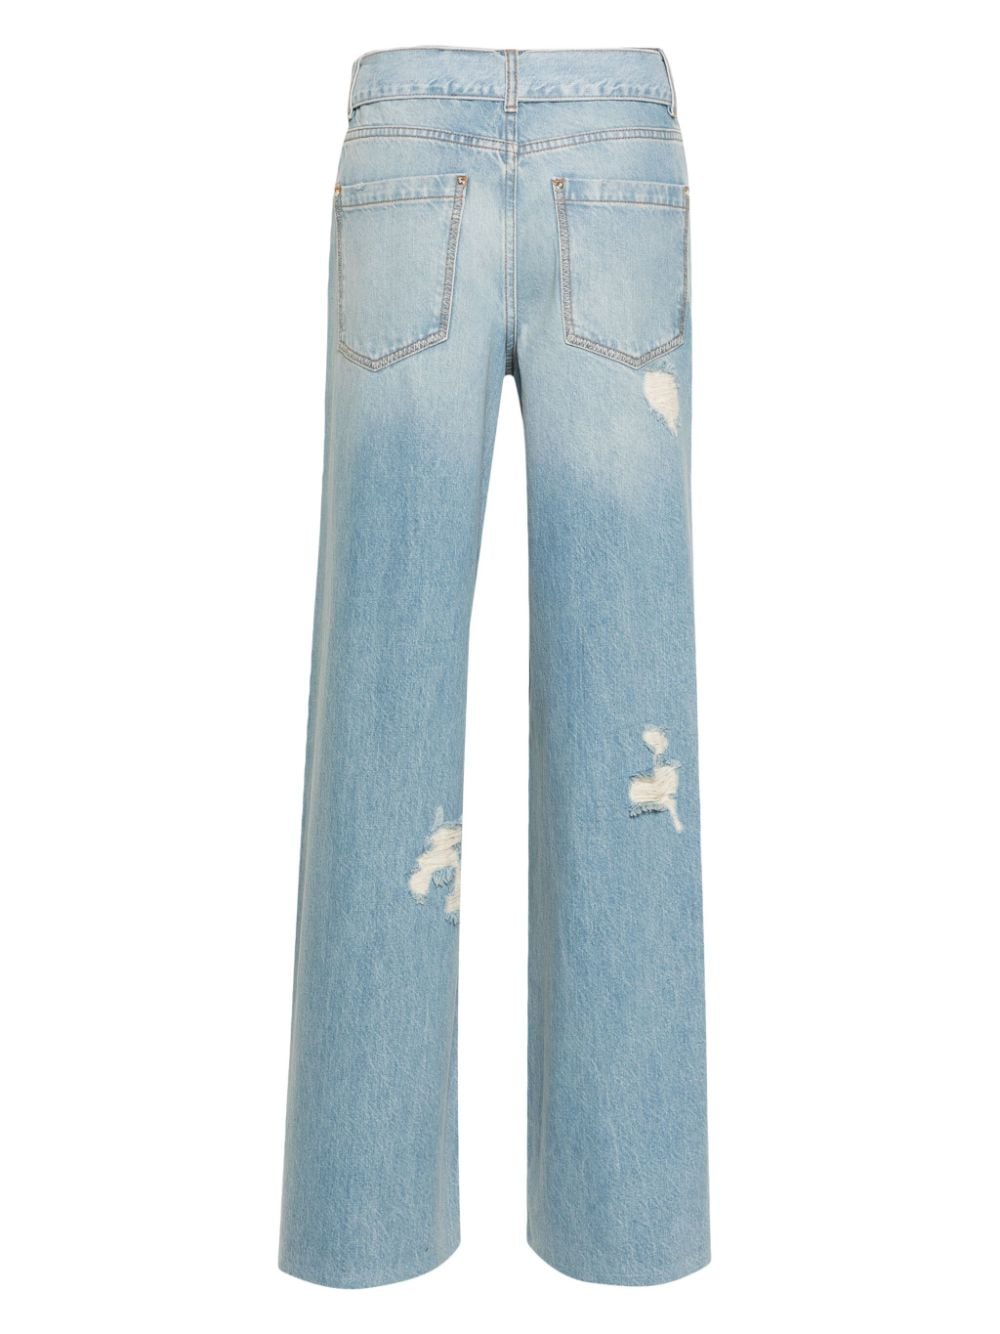 Jeans dettaglio strass